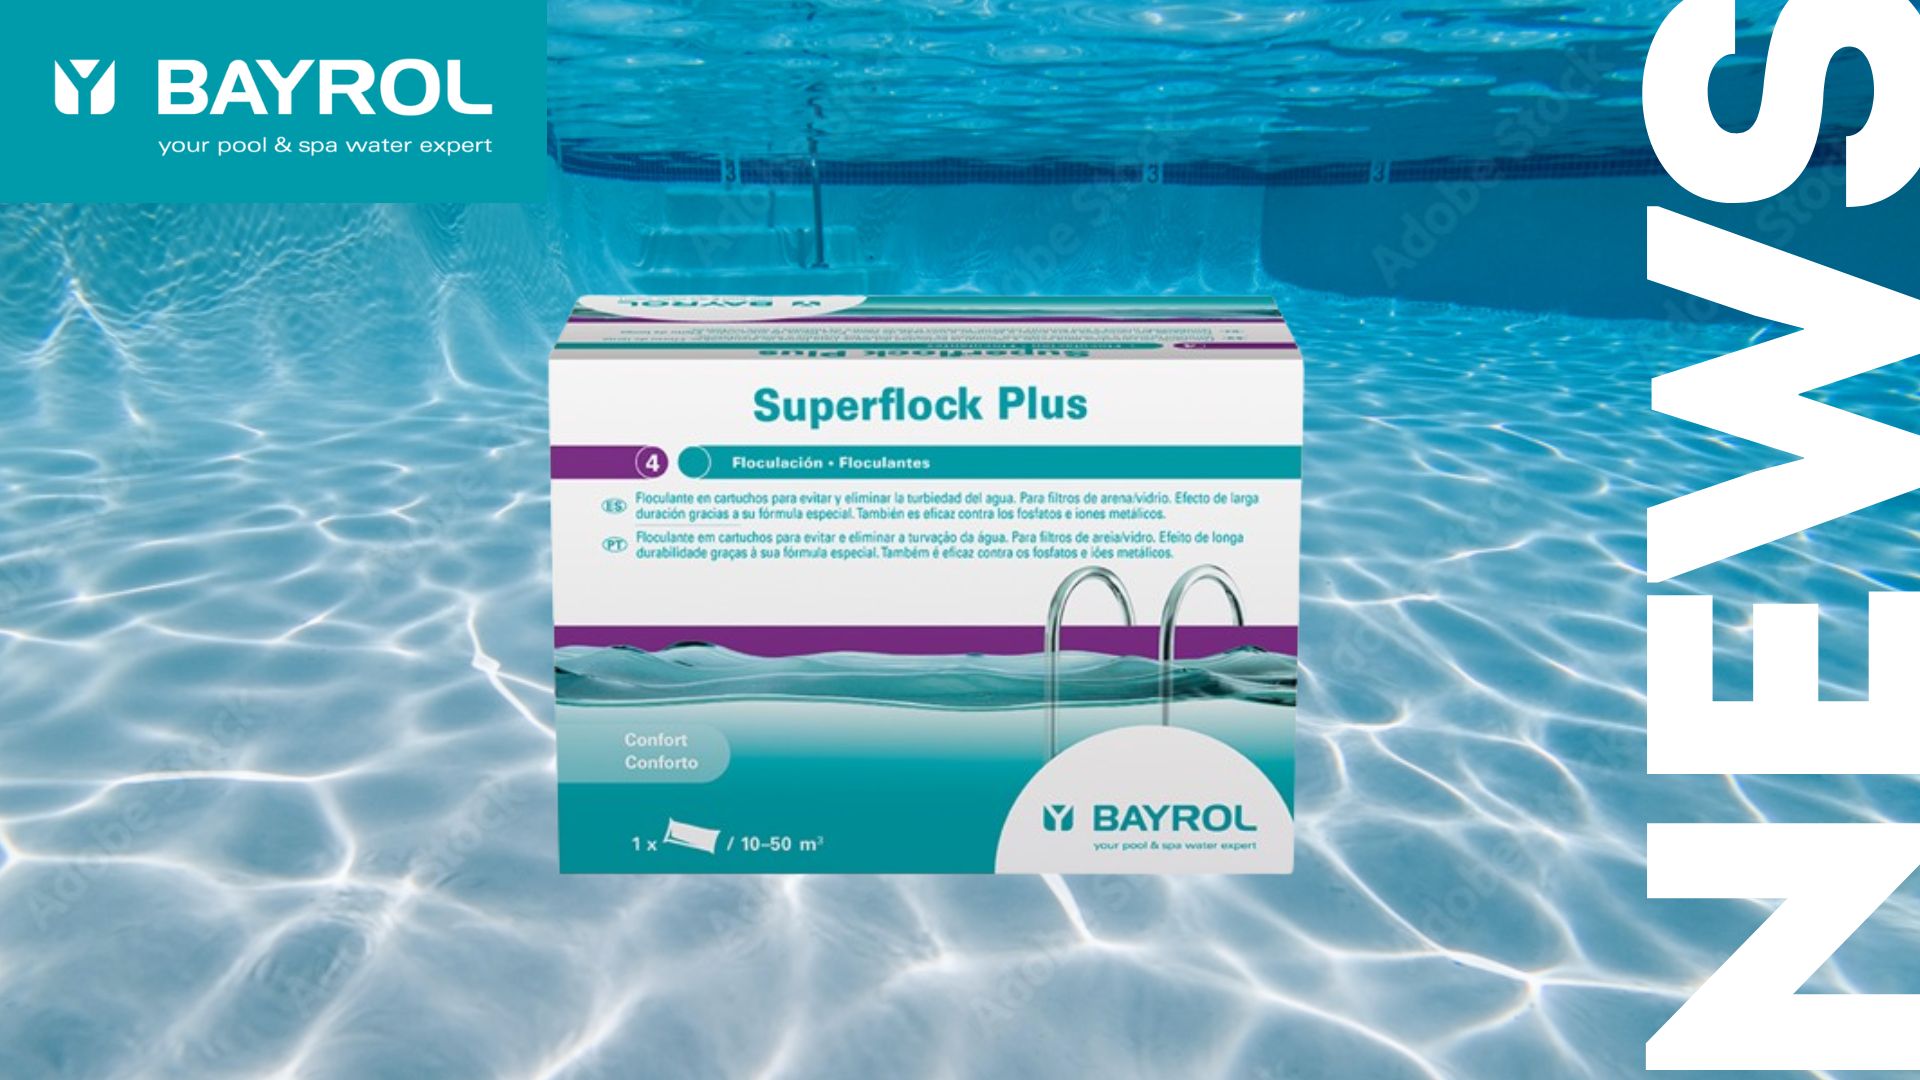 Cómo utilizar el floculante en la piscina – con el Superflock Plus de BAYROL